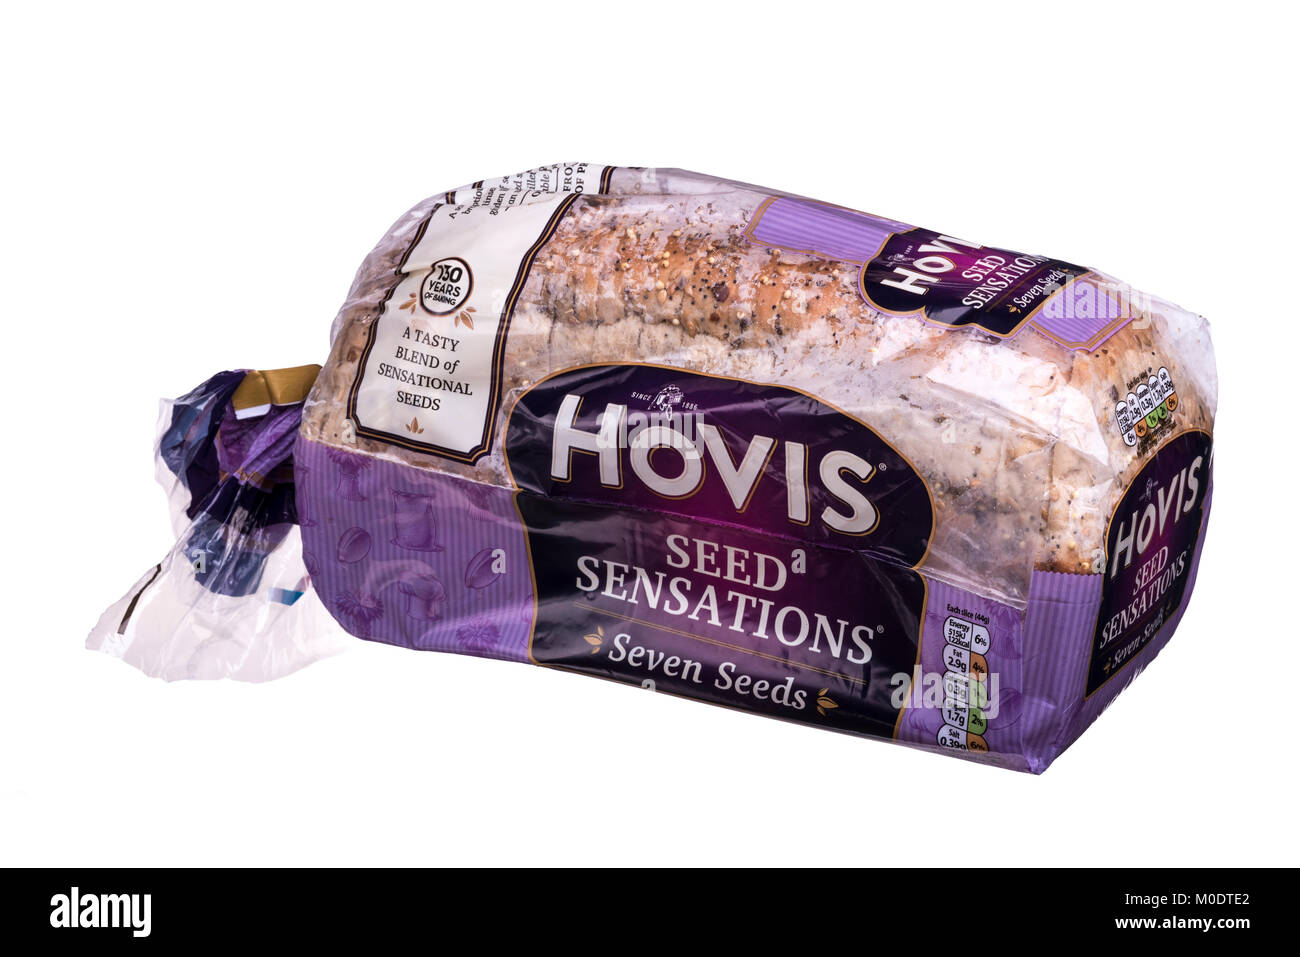 Hovis ha sensazioni di sementi a fette di pane, avvolti in materiale plastico. Foto Stock